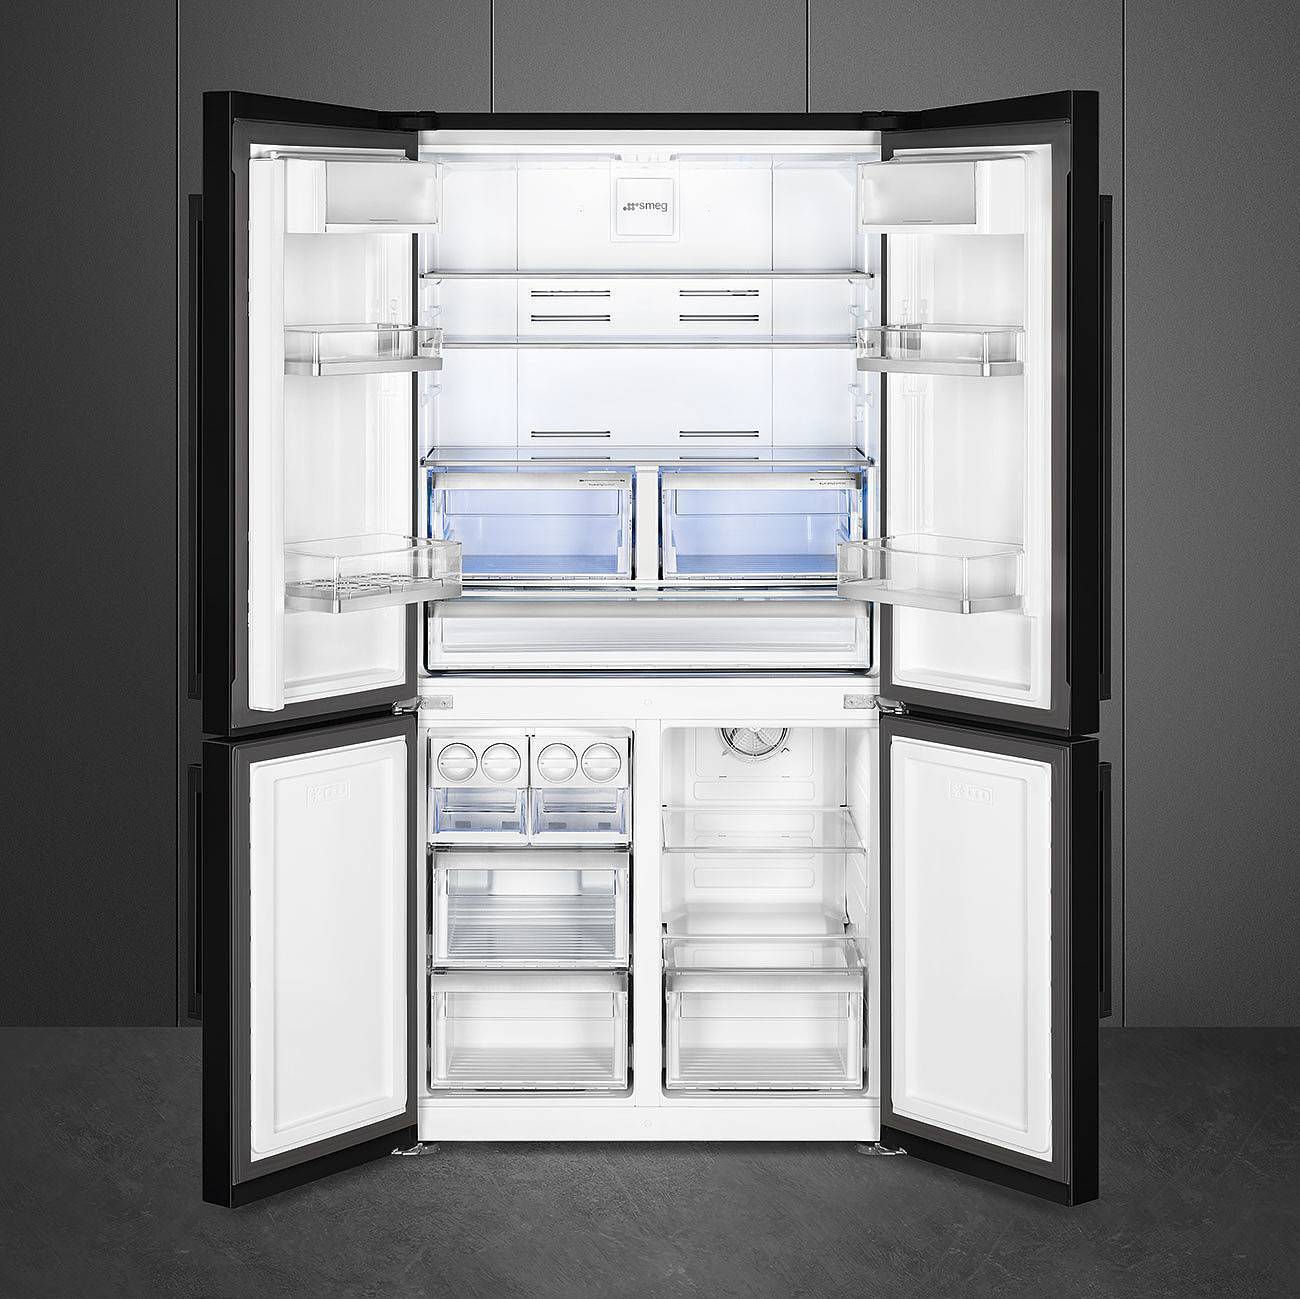 12 лучших холодильников side by side - рейтинг 2021